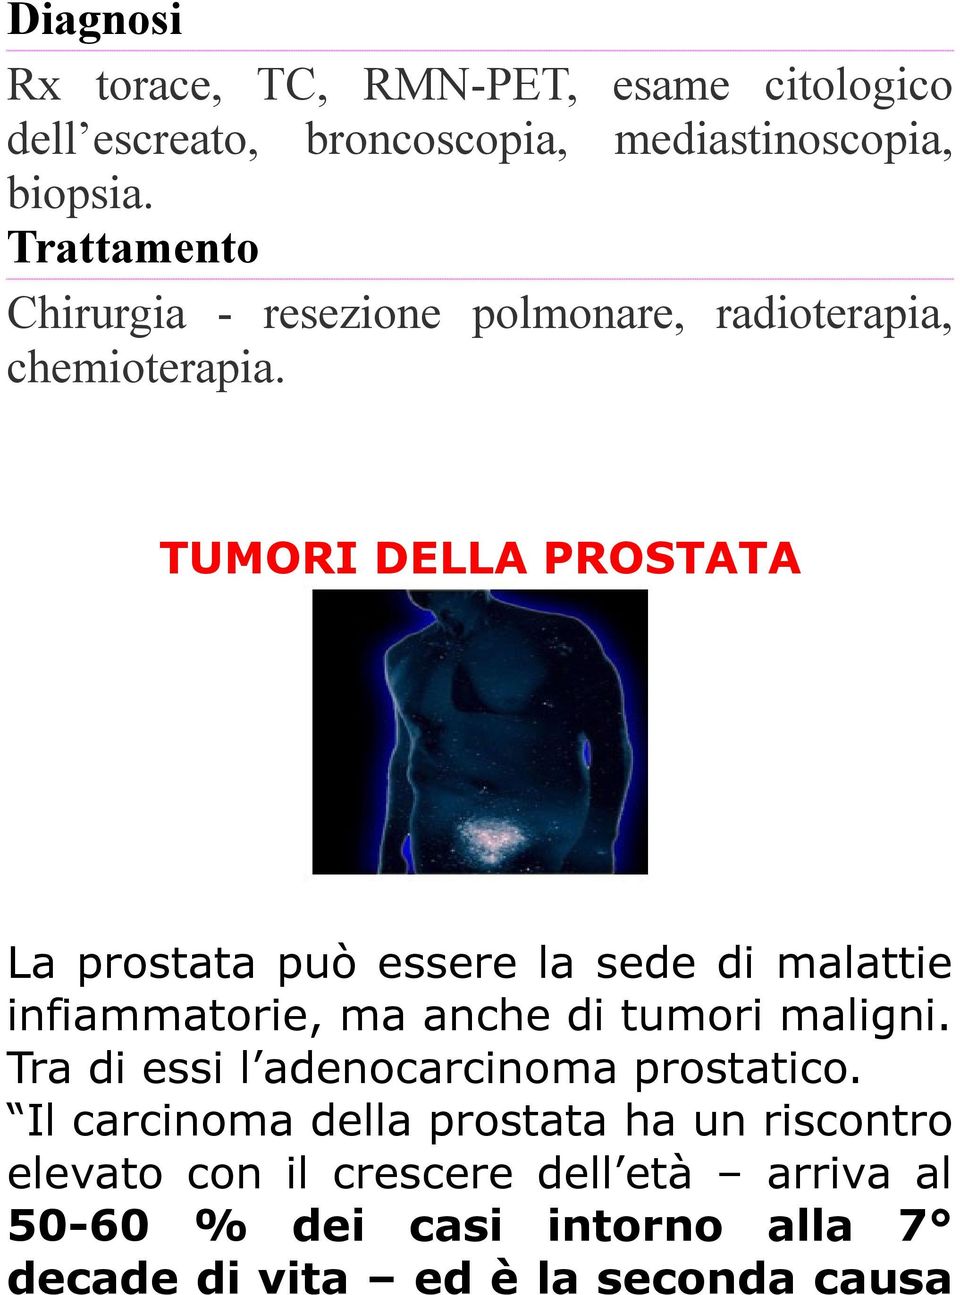 TUMORI DELLA PROSTATA La prostata può essere la sede di malattie infiammatorie, ma anche di tumori maligni.